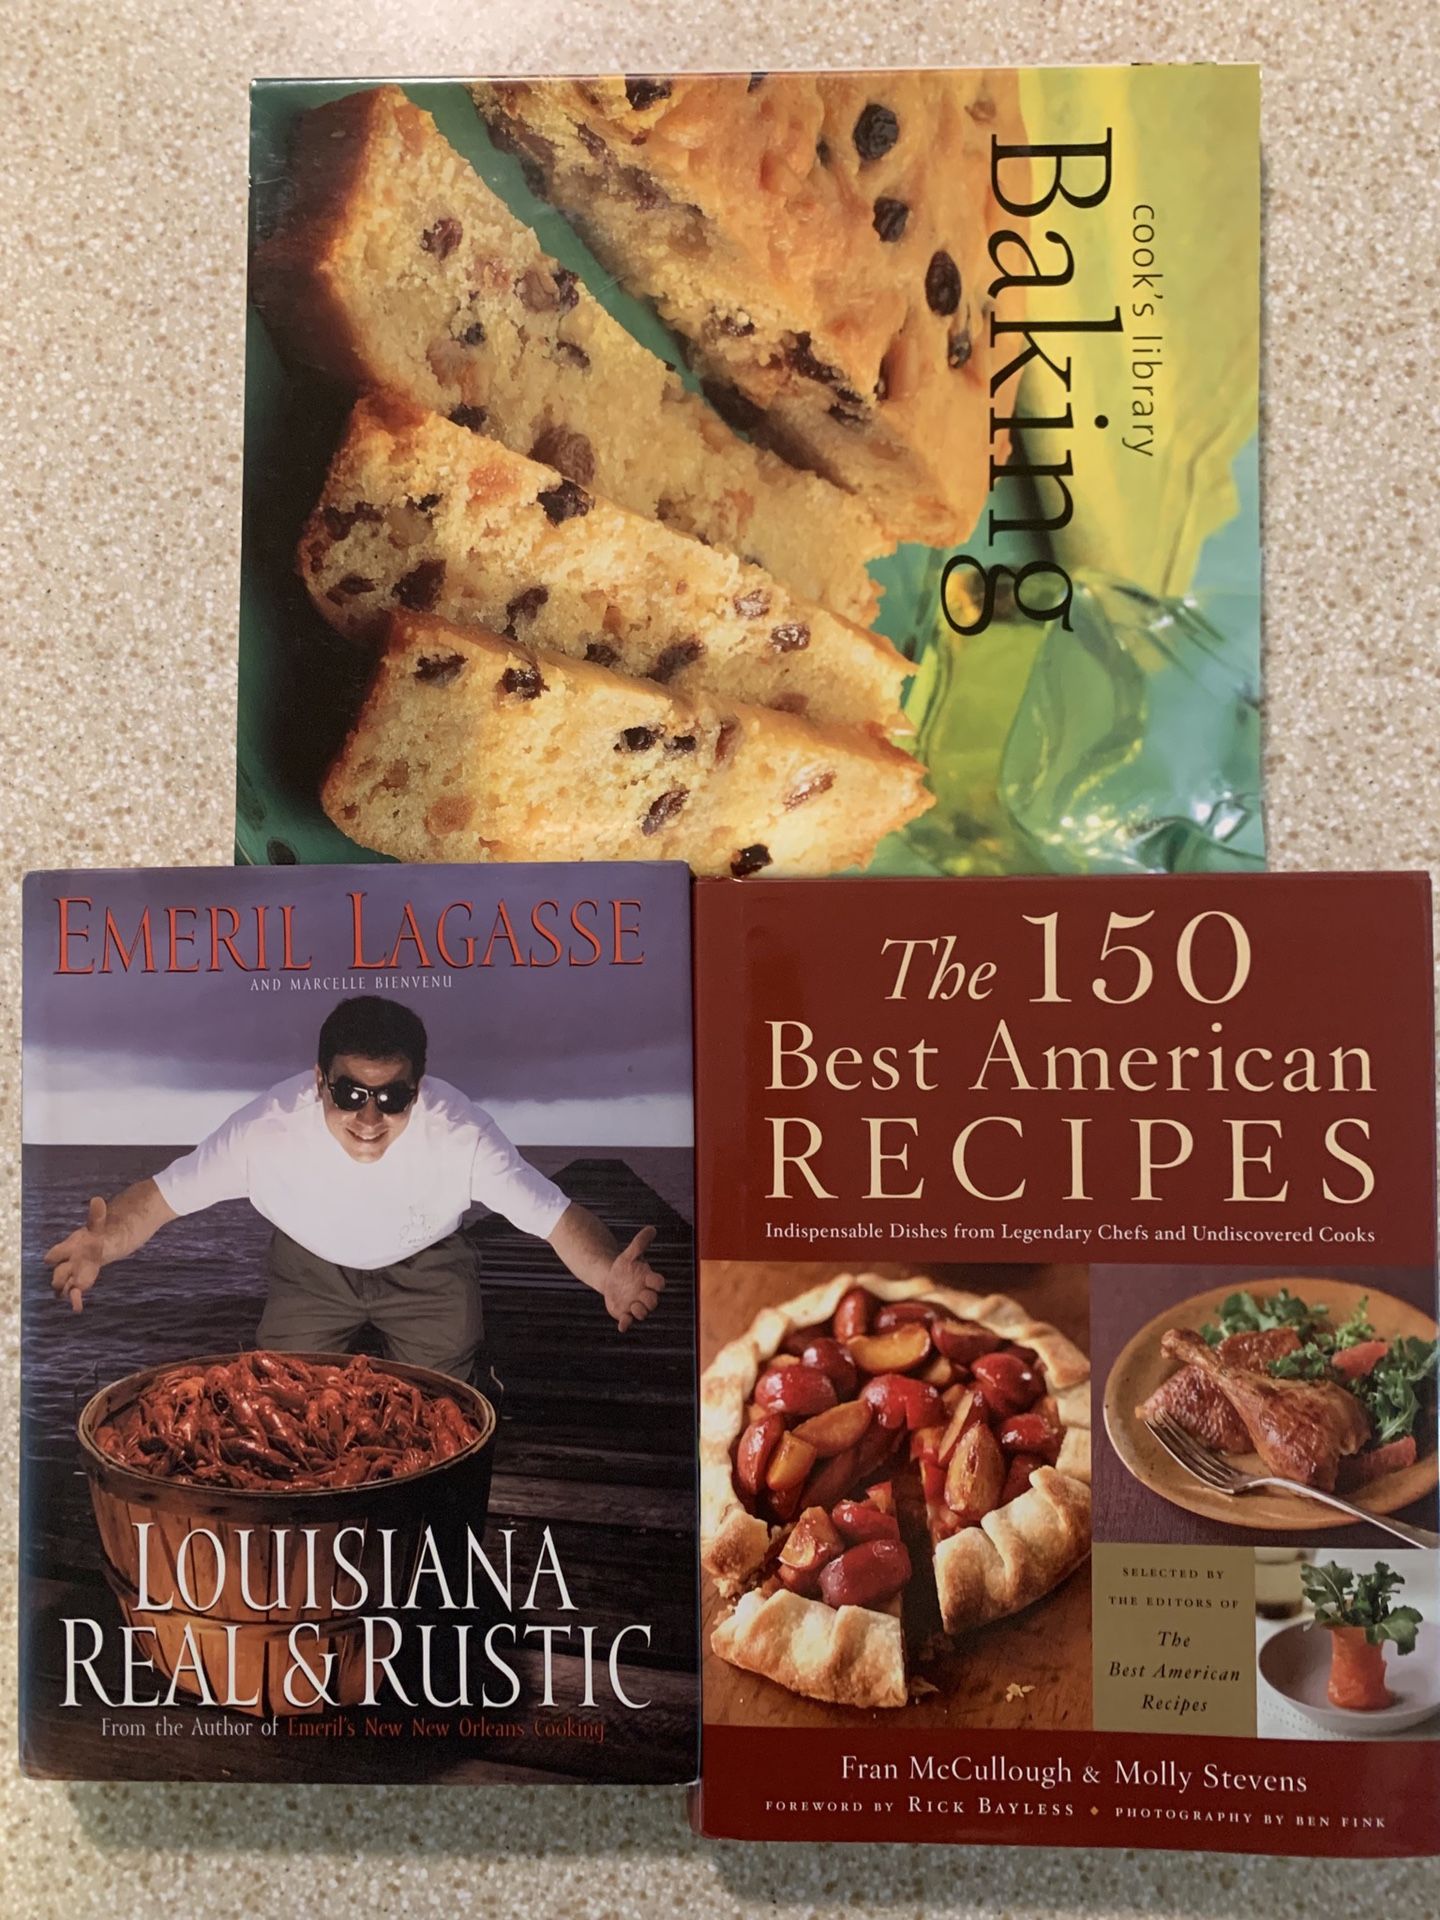 Cookbooks - Baking, Emeril, etc.